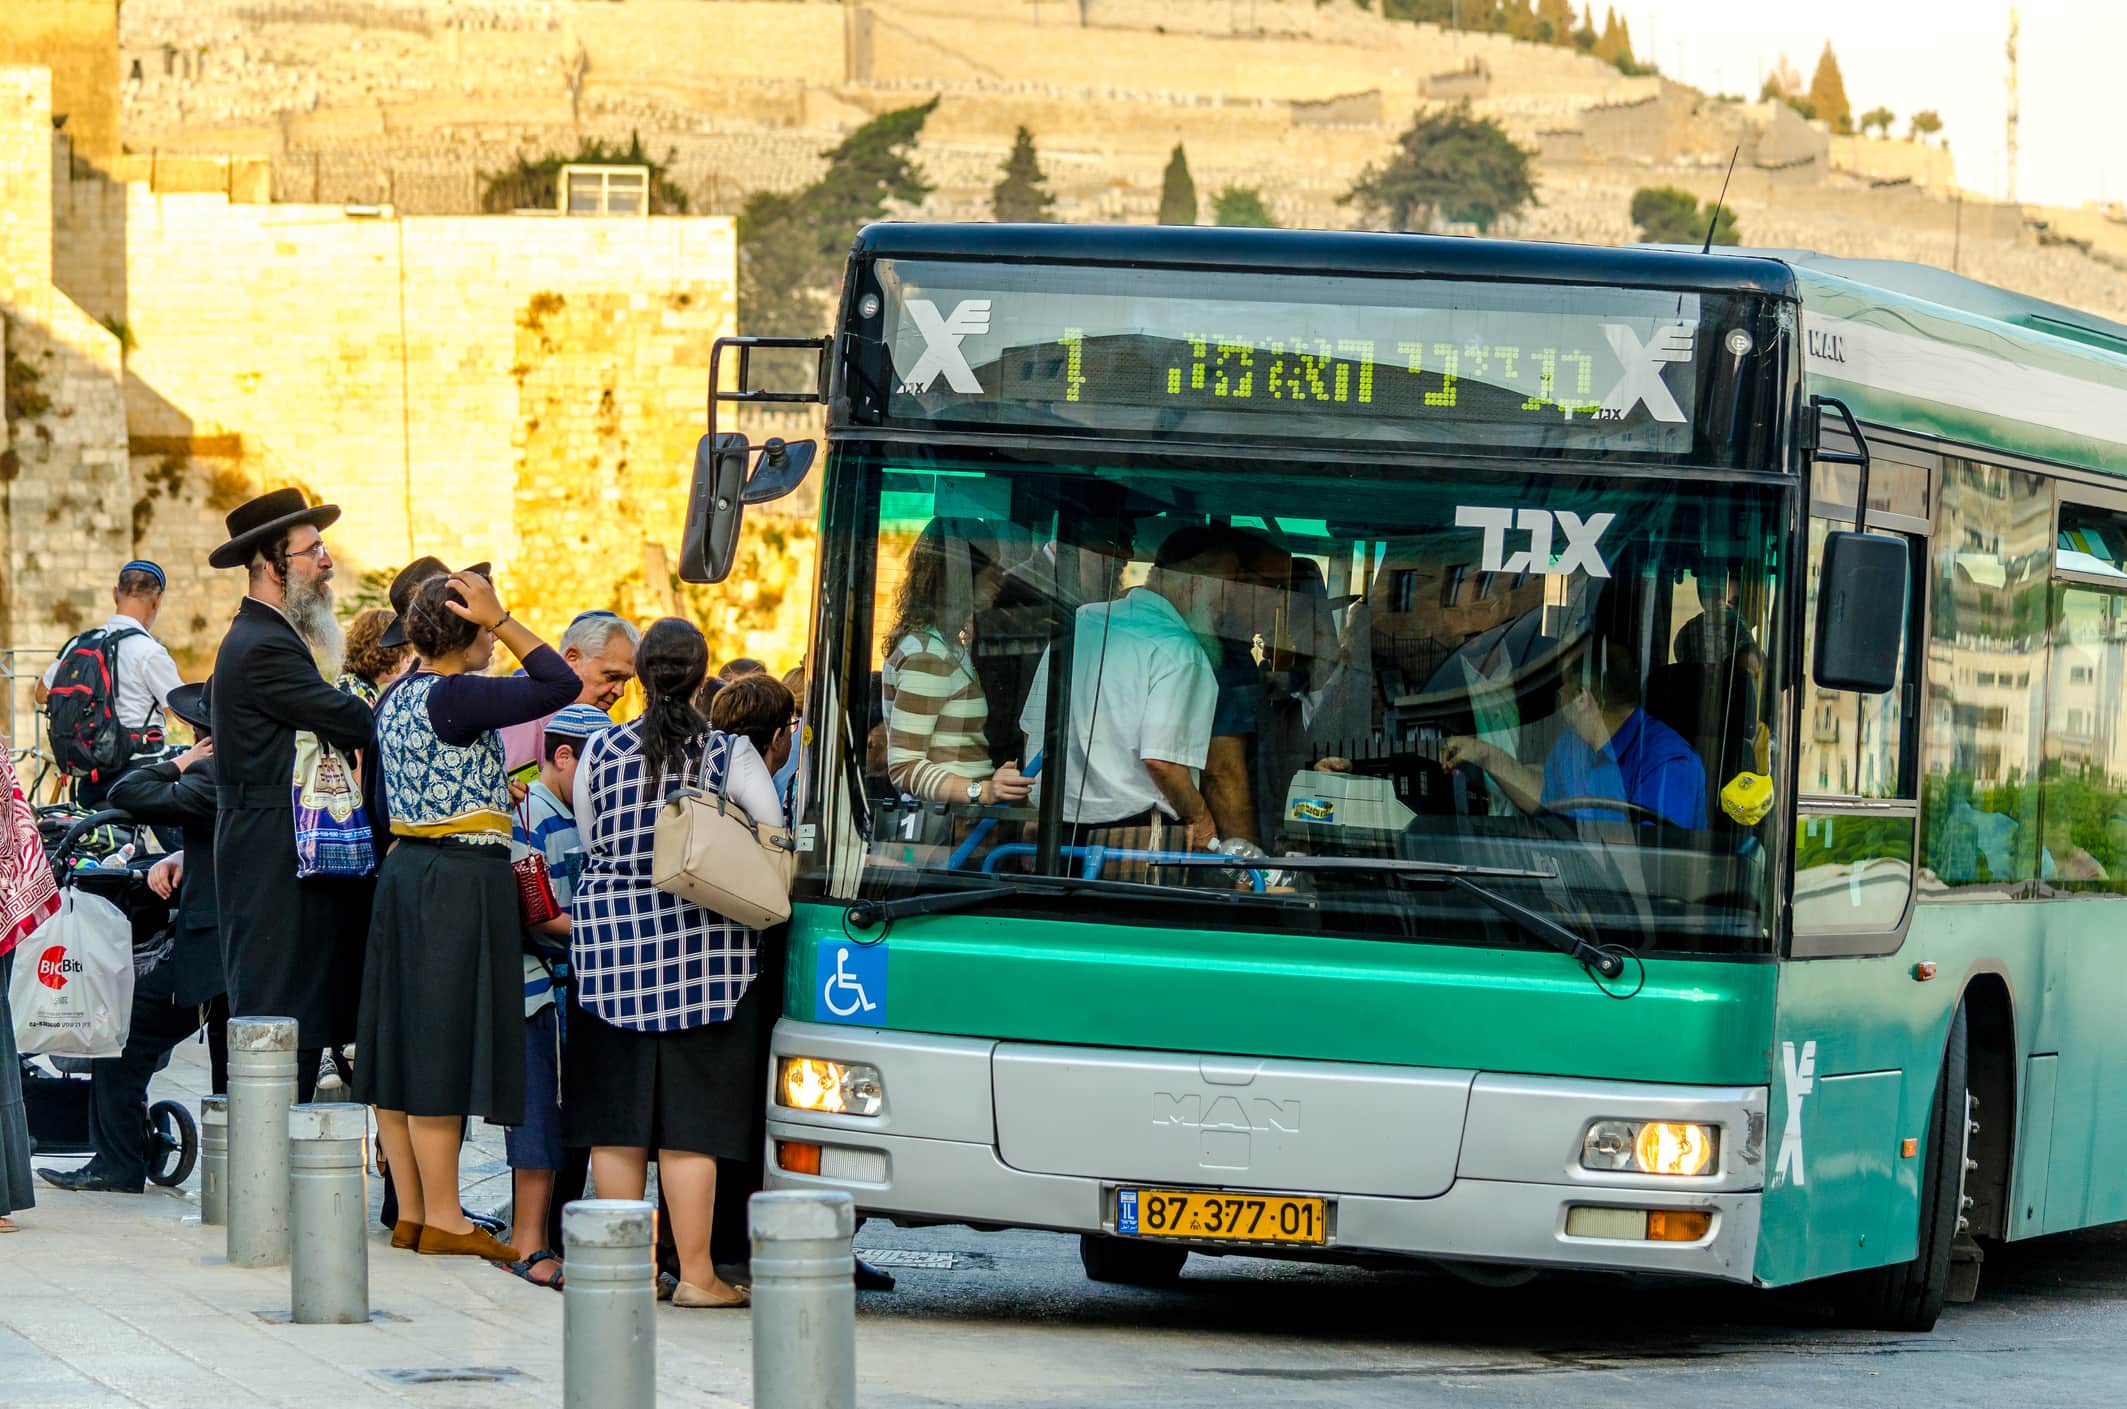 אוטובוס אגד אוסף נוסעים בעיר העתיקה בירושלים, אילוסטרציה (צילום: iStock)